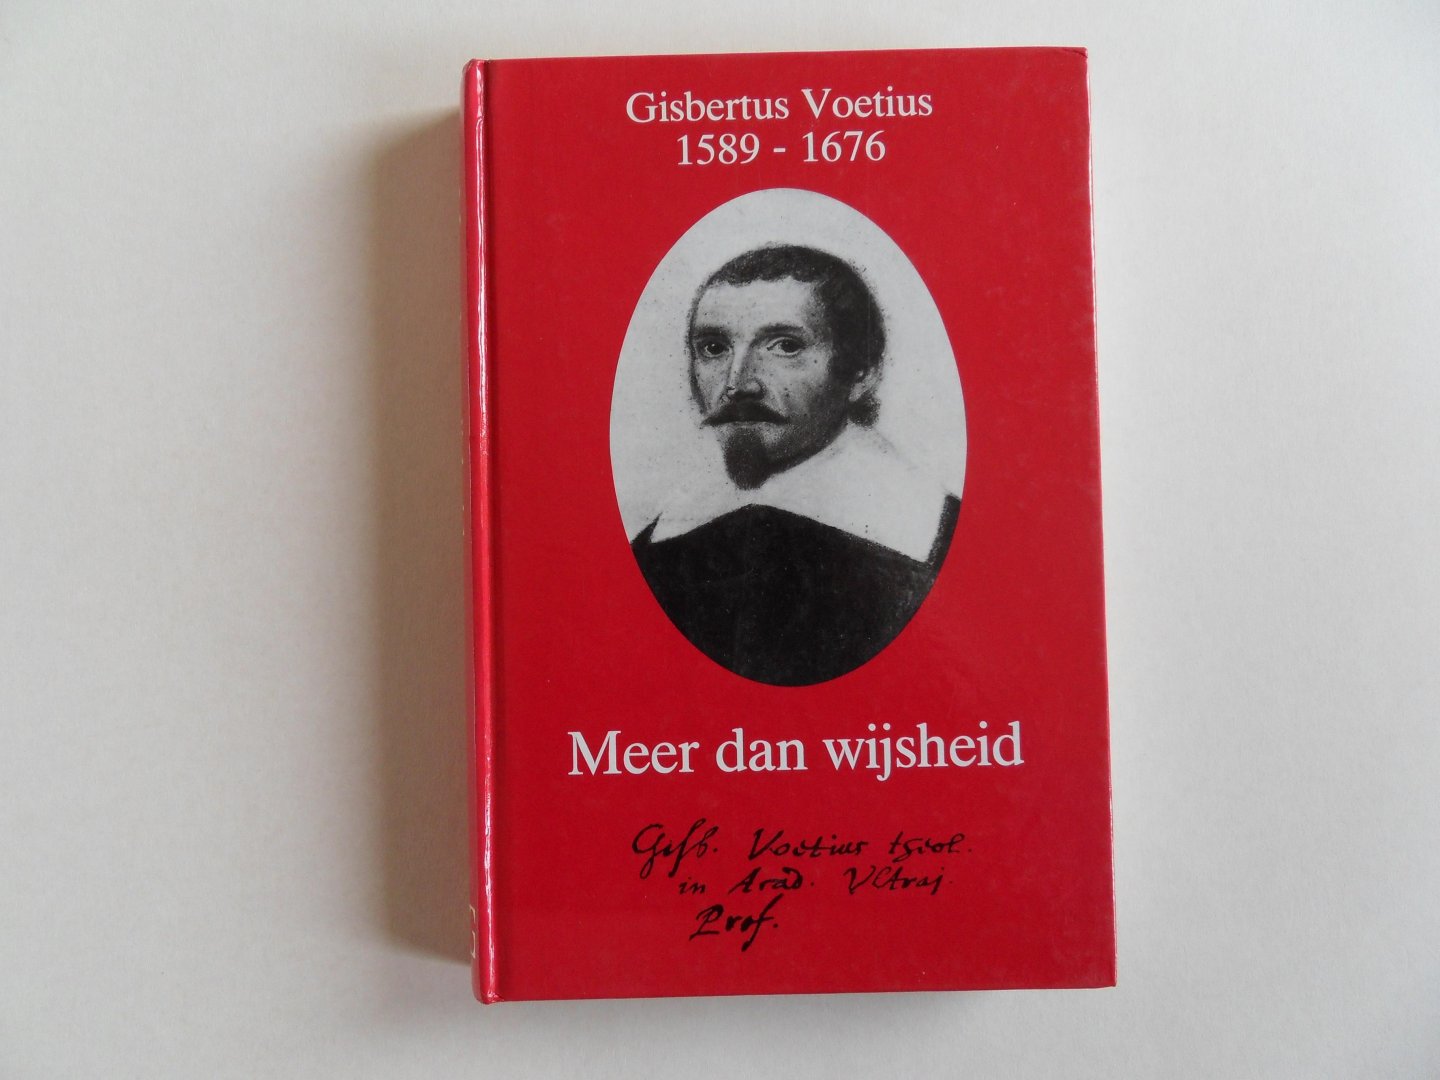 Roodbeen, J. [ onder redactie van ]. - Gisbertus Voetius 1589 - 1676. - Meer dan wijsheid.